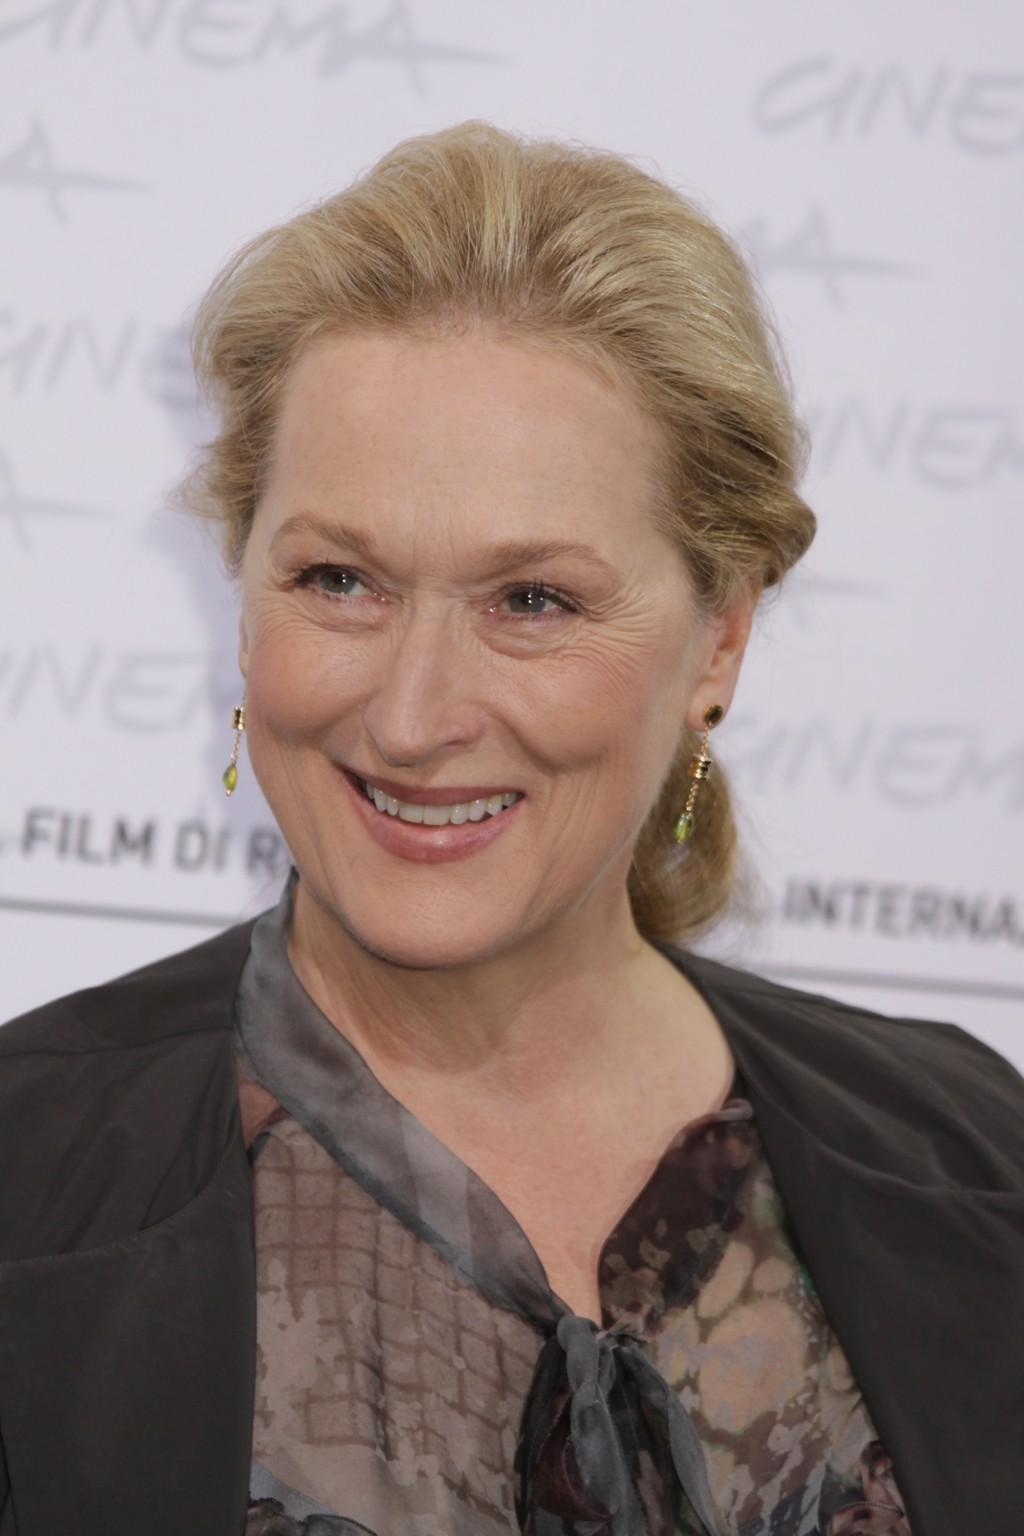 Meryl Streep recevra un Ours d'or d'honneur à la Berlinale 2012